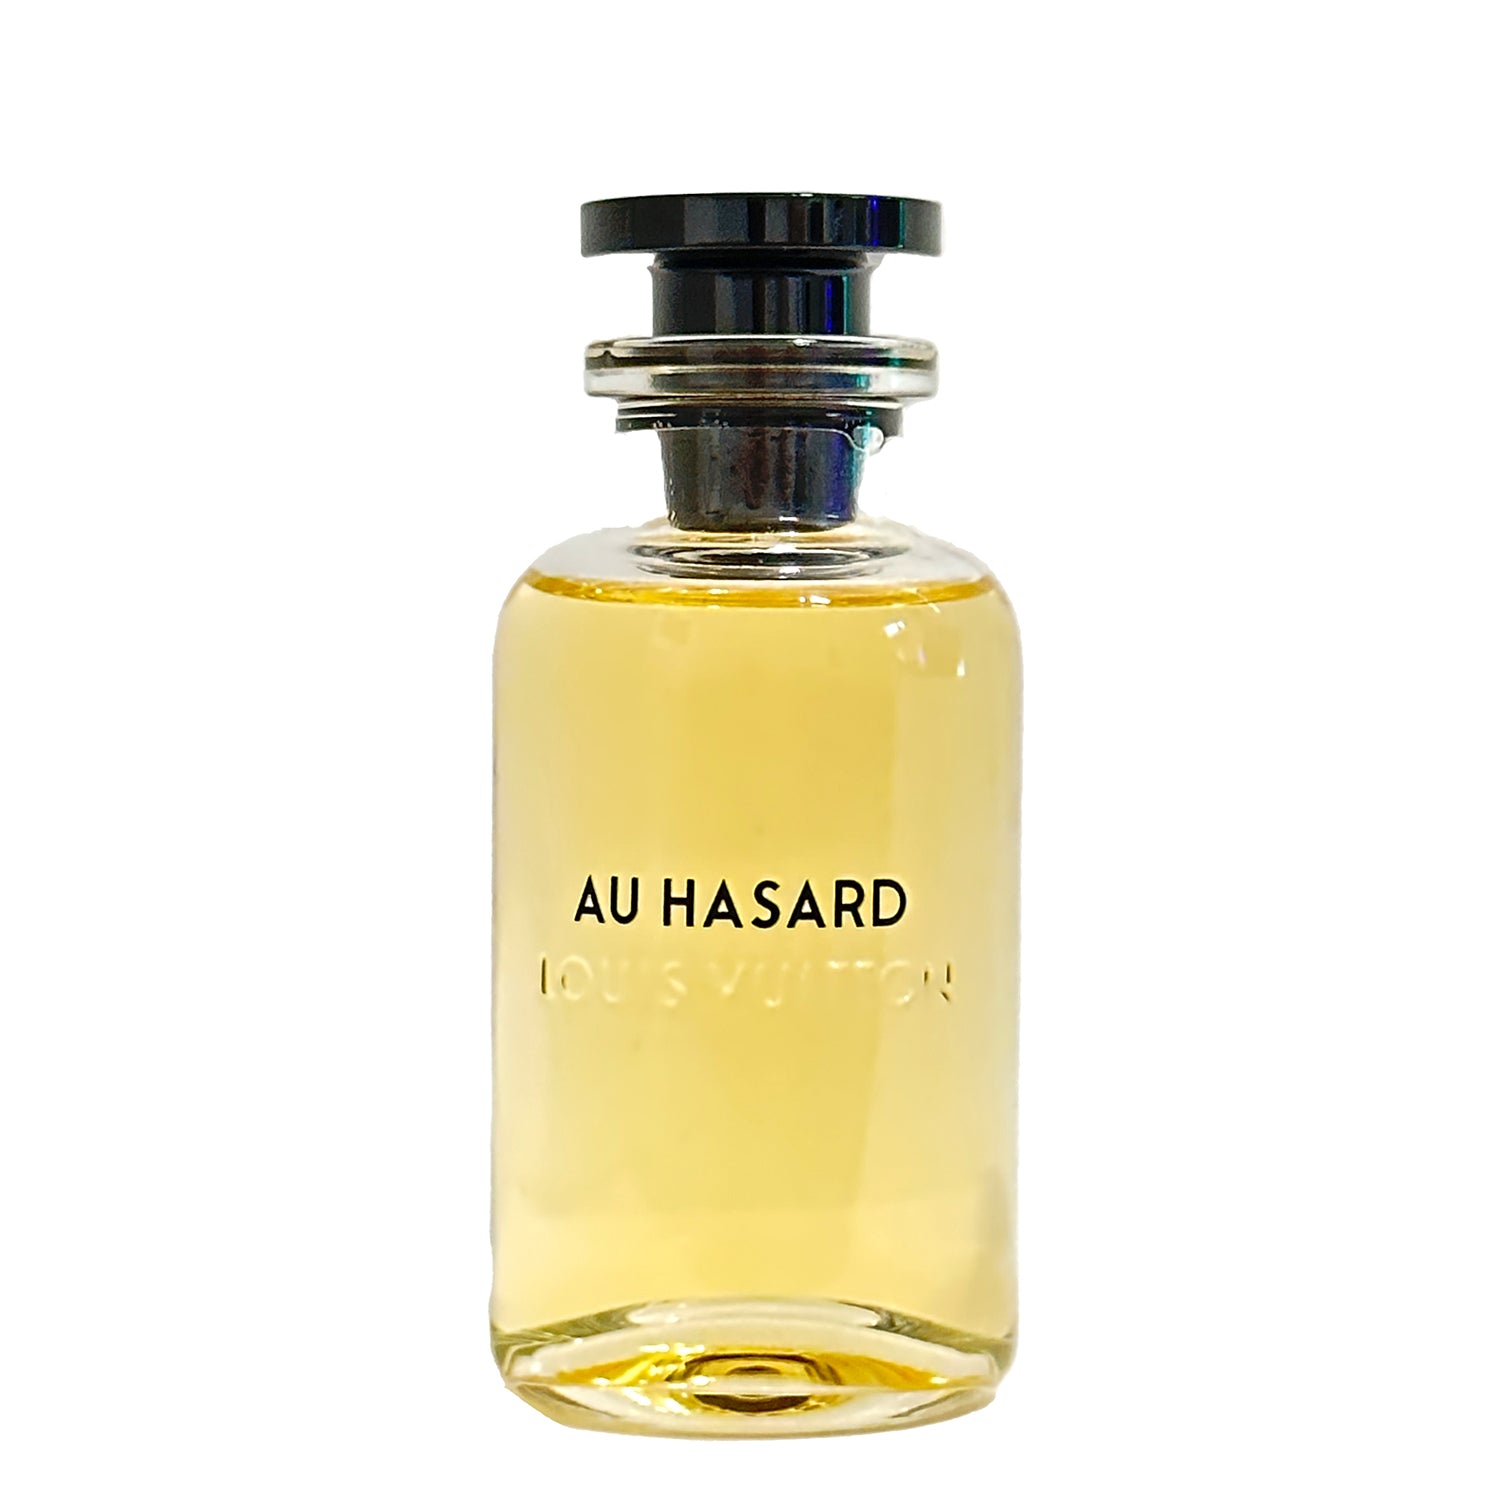 Louis Vuitton | Au Hasard bottling 